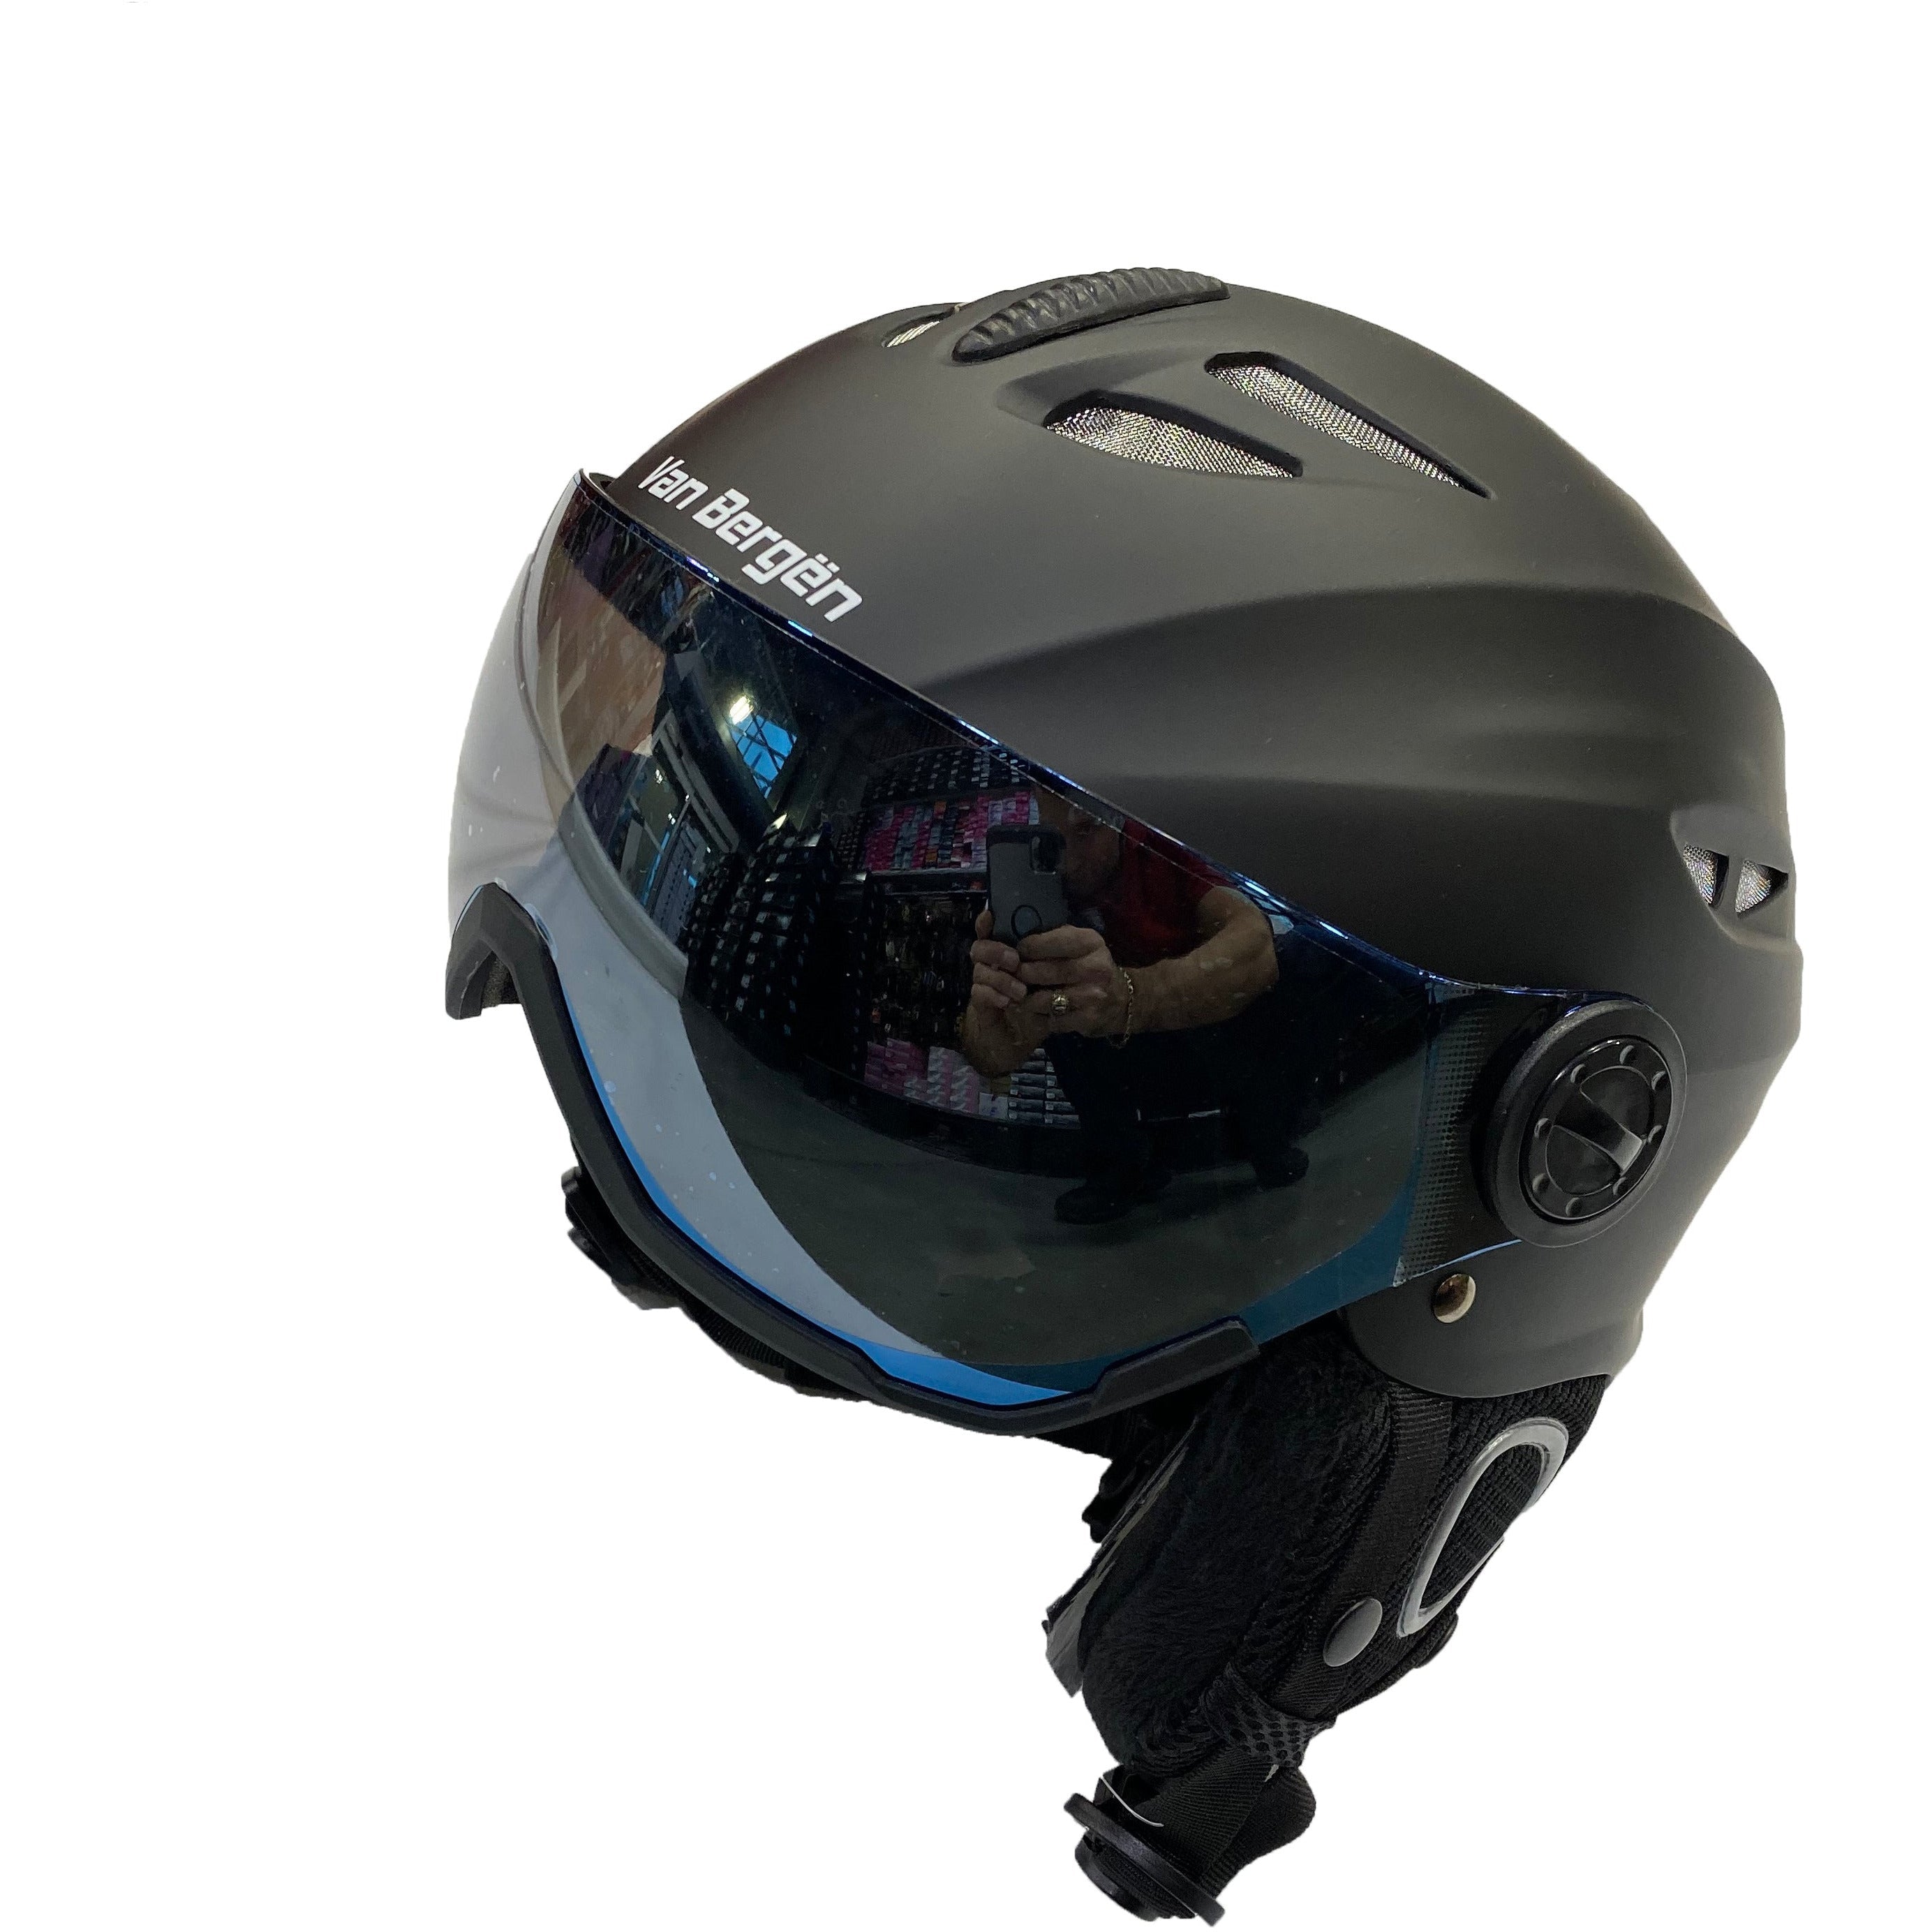 Casque ski visiere, achat casque de ski avec visiere intégrée